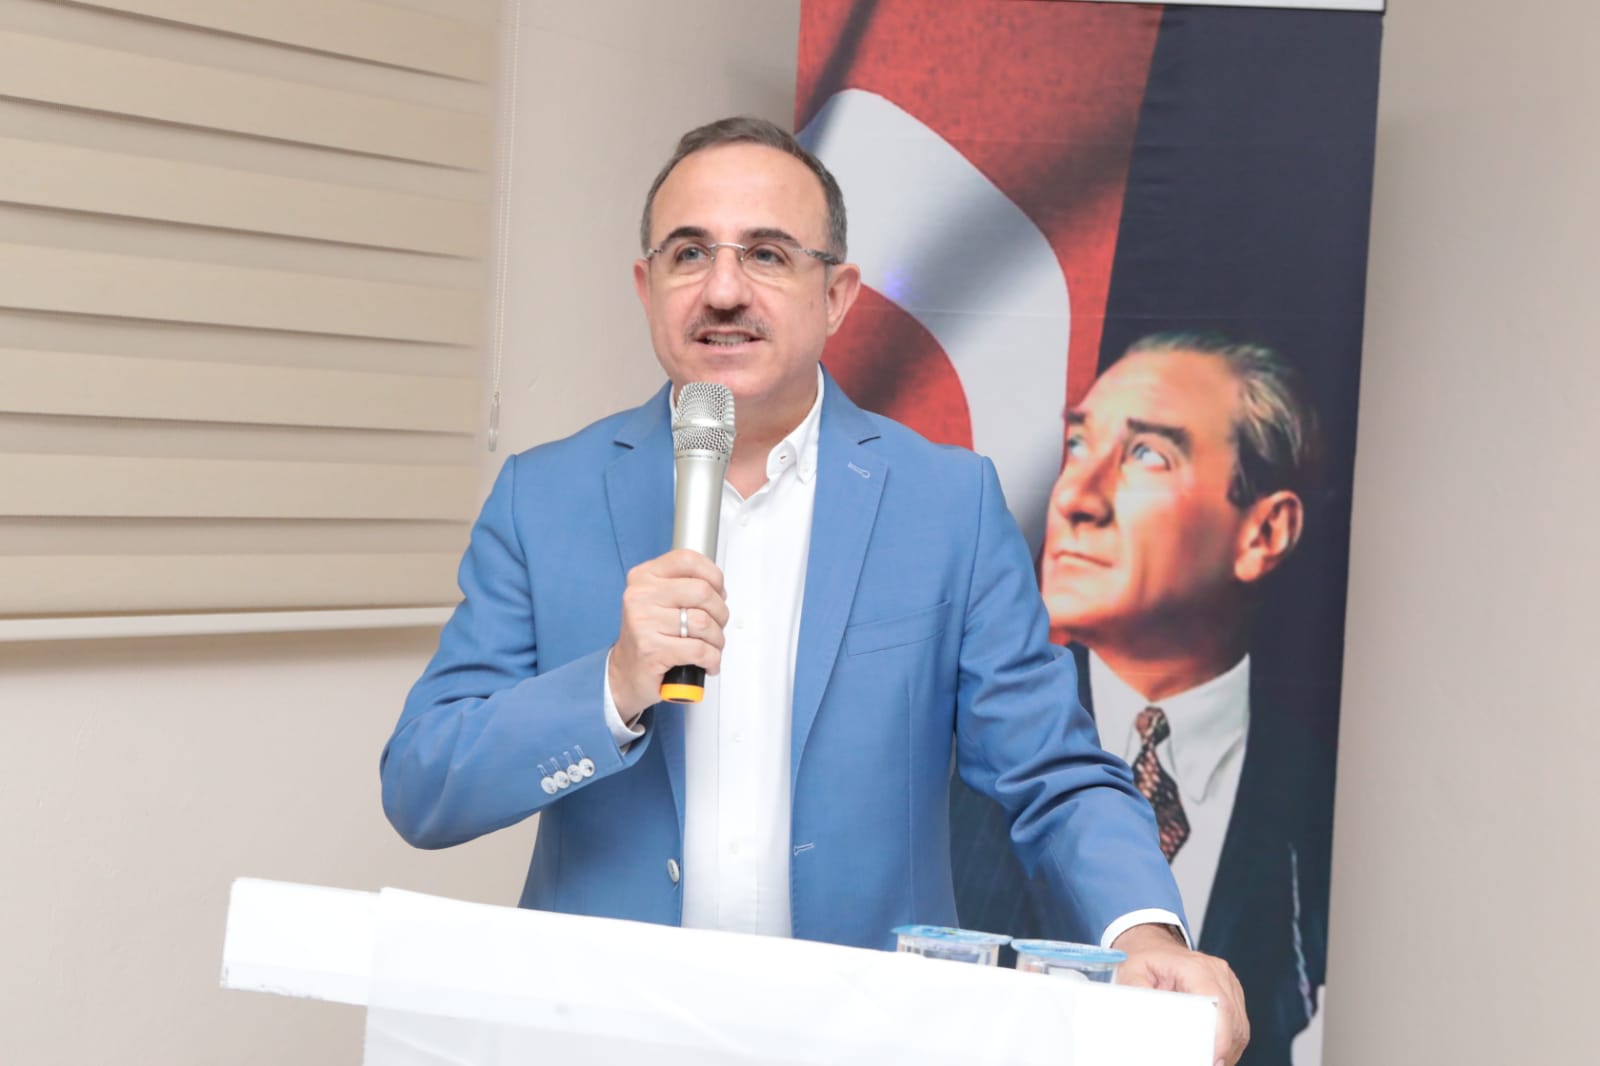 AK Parti İzmir İl Başkanı Kerem Ali Sürekli;  “Yangına körükle gidilmez!”